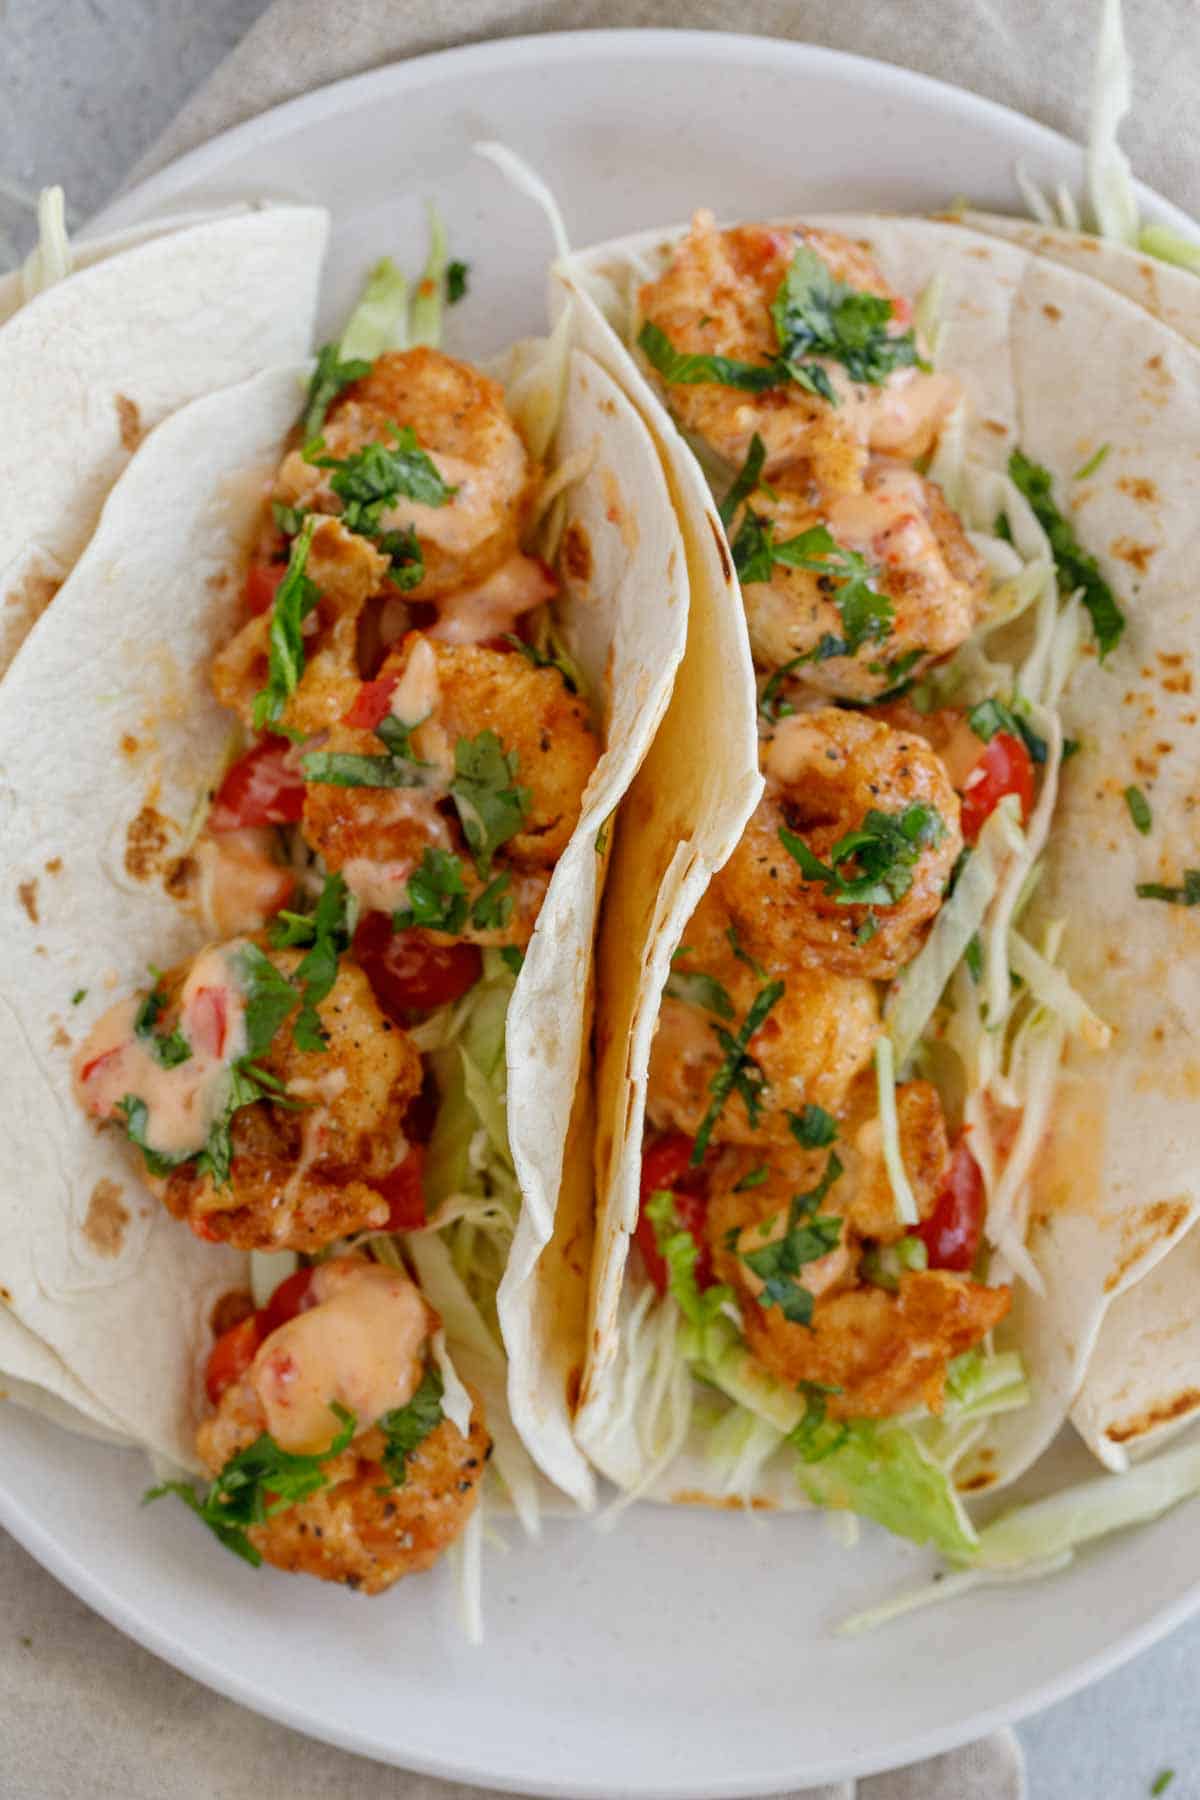 Bang bang shrimp tacos next to each other